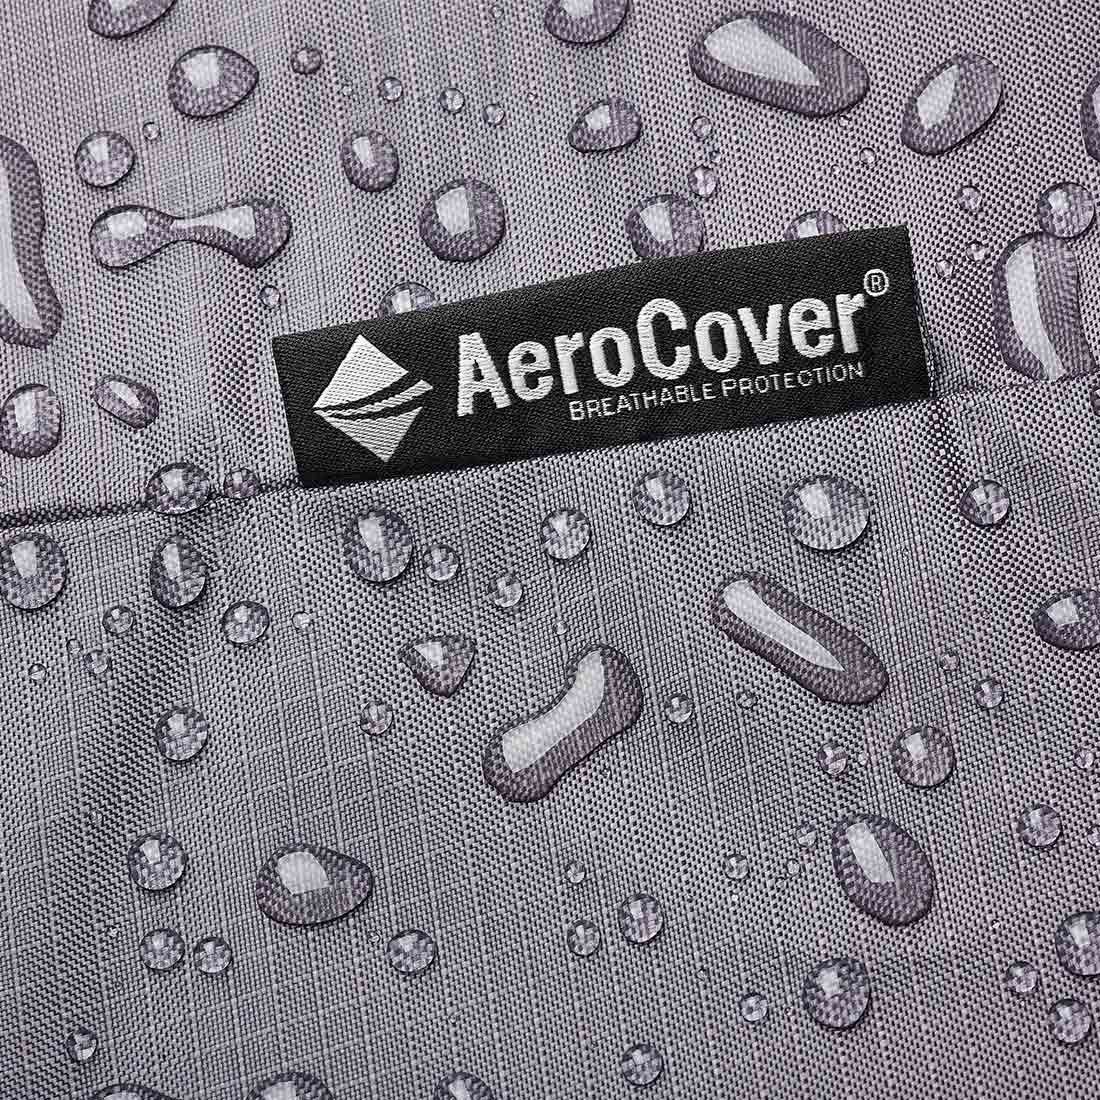 AeroCover Schutzhülle für Strandkorb 128x105x160/140cm Polyester